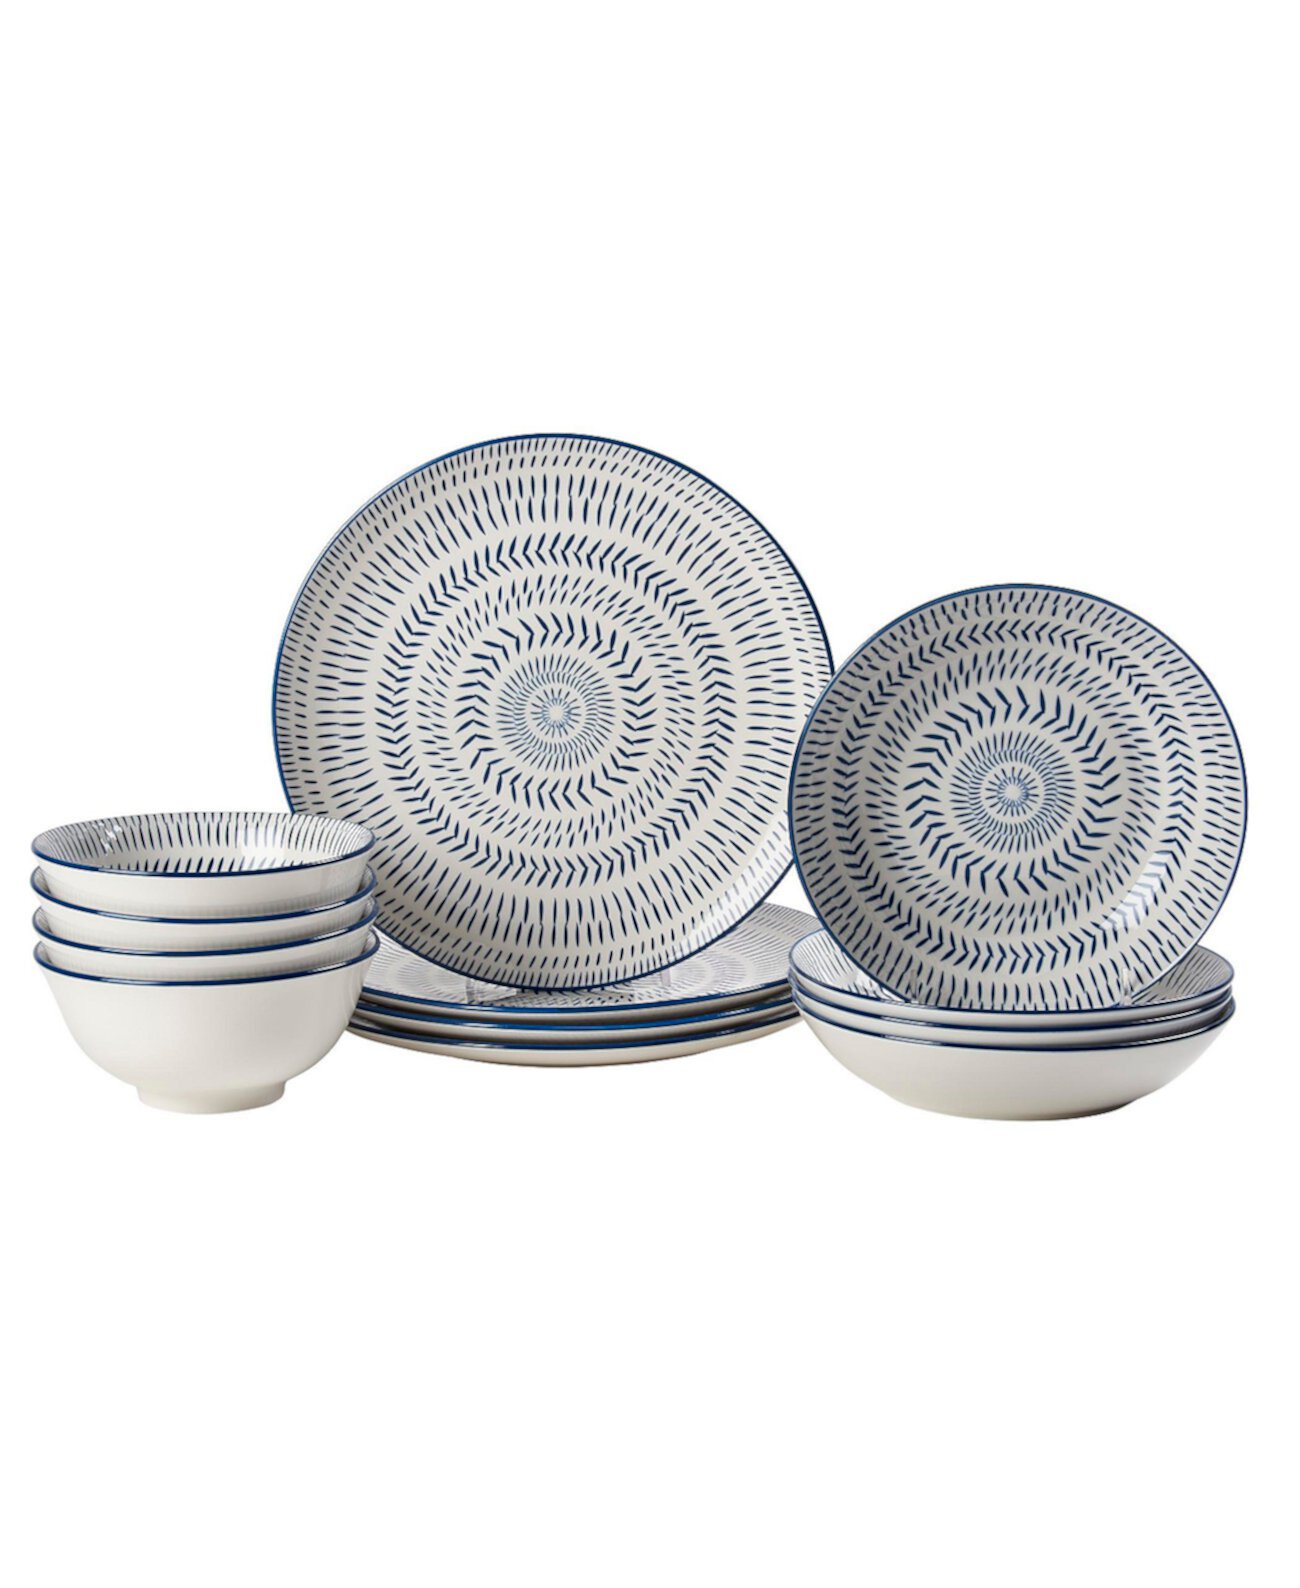 Темно-синий набор столовой посуды с тампопечатью, 12 предметов, сервис на 4 персоны Tabletops Gallery